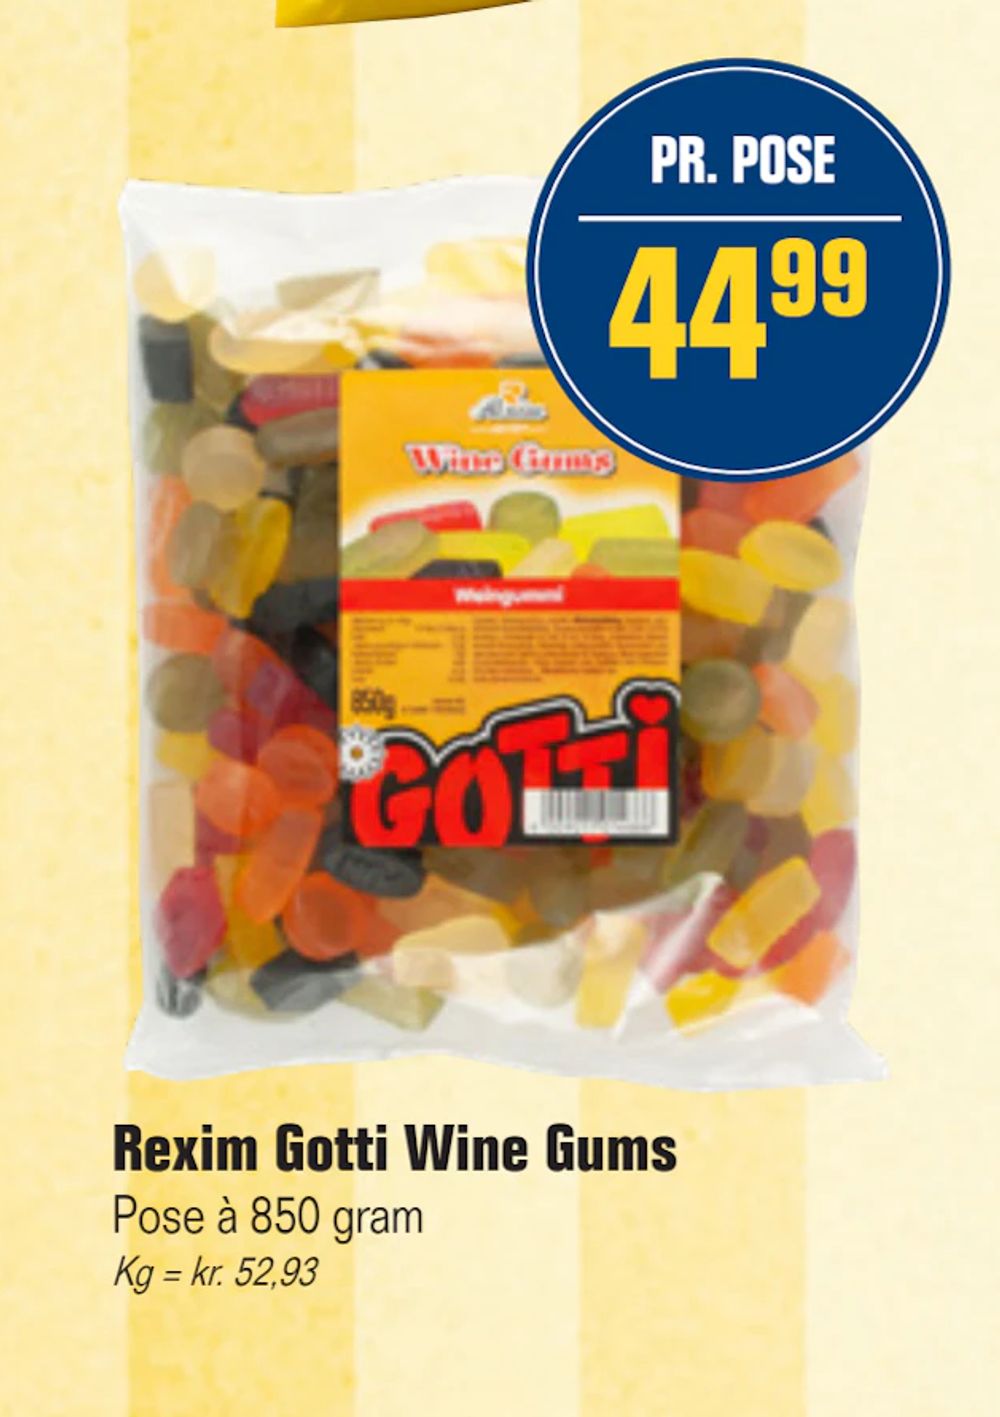 Tilbud på Rexim Gotti Wine Gums fra Otto Duborg til 44,99 kr.